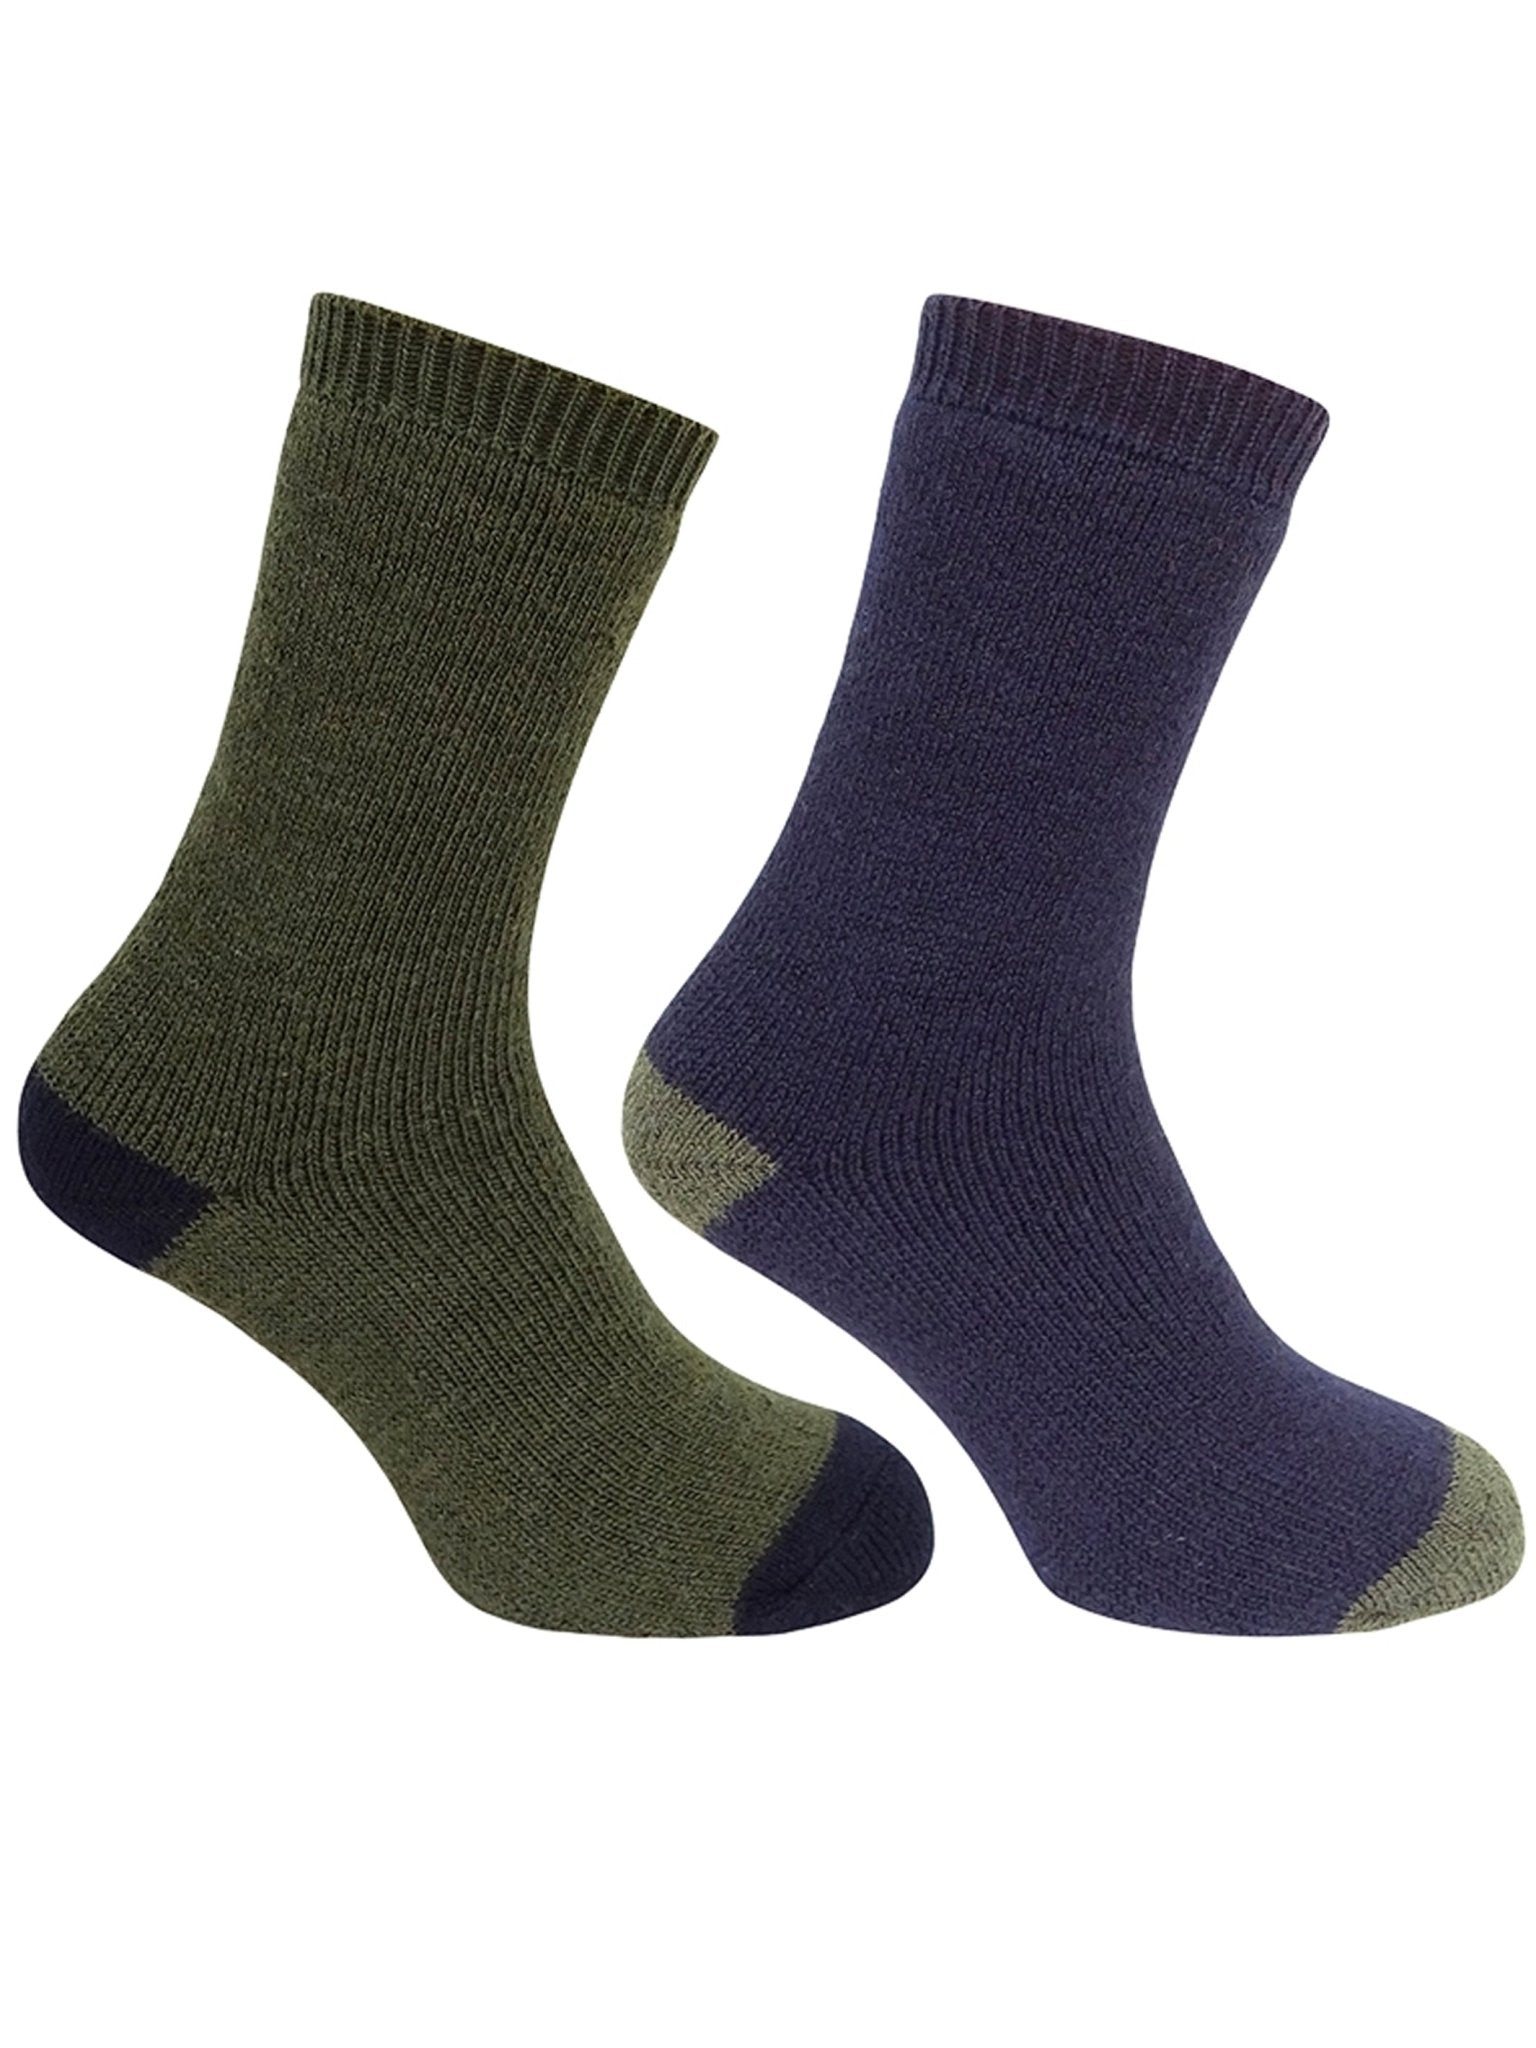 Hoggs of Fife Hoggs of Fife - 1904 Short Country Mens Socks (Twin Pack Socks) - Tech Active Socks